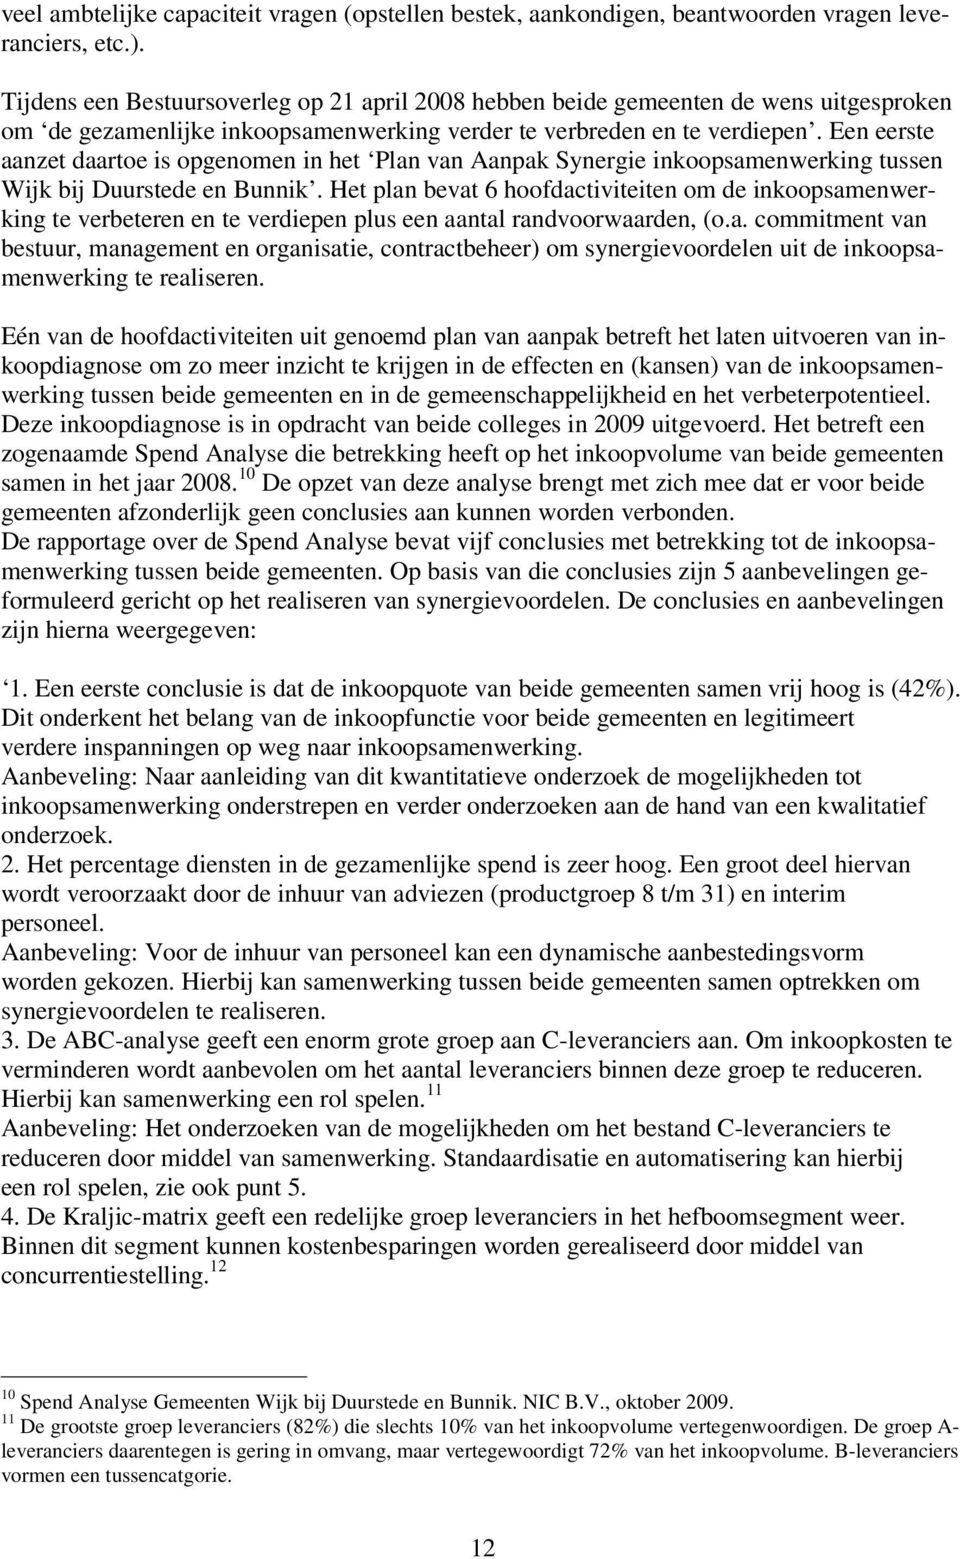 Een eerste aanzet daartoe is opgenomen in het Plan van Aanpak Synergie inkoopsamenwerking tussen Wijk bij Duurstede en Bunnik.